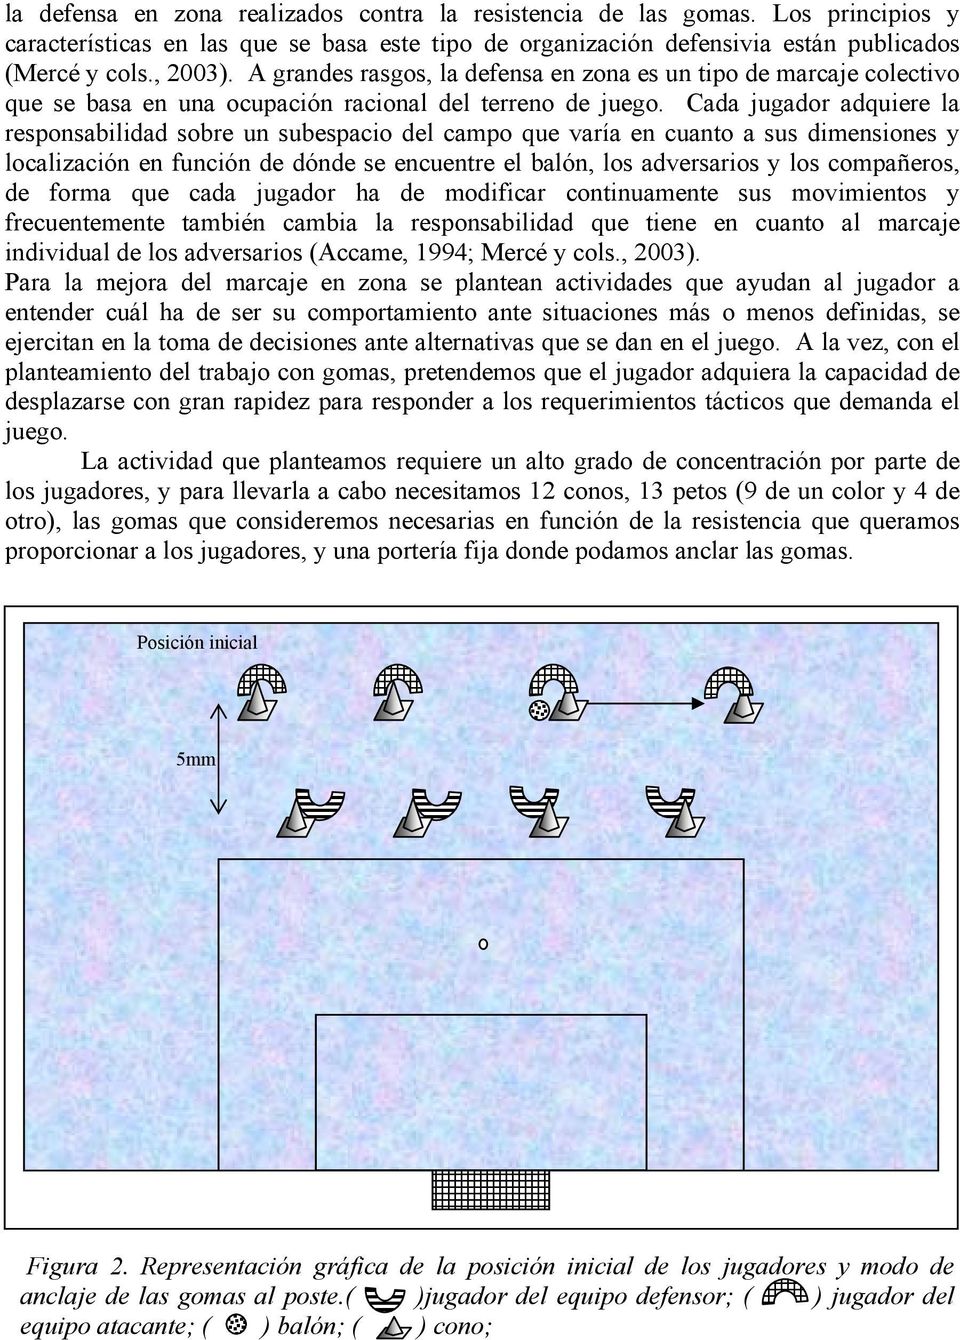 Cada jugador adquiere la responsabilidad sobre un subespacio del campo que varía en cuanto a sus dimensiones y localización en función de dónde se encuentre el balón, los adversarios y los